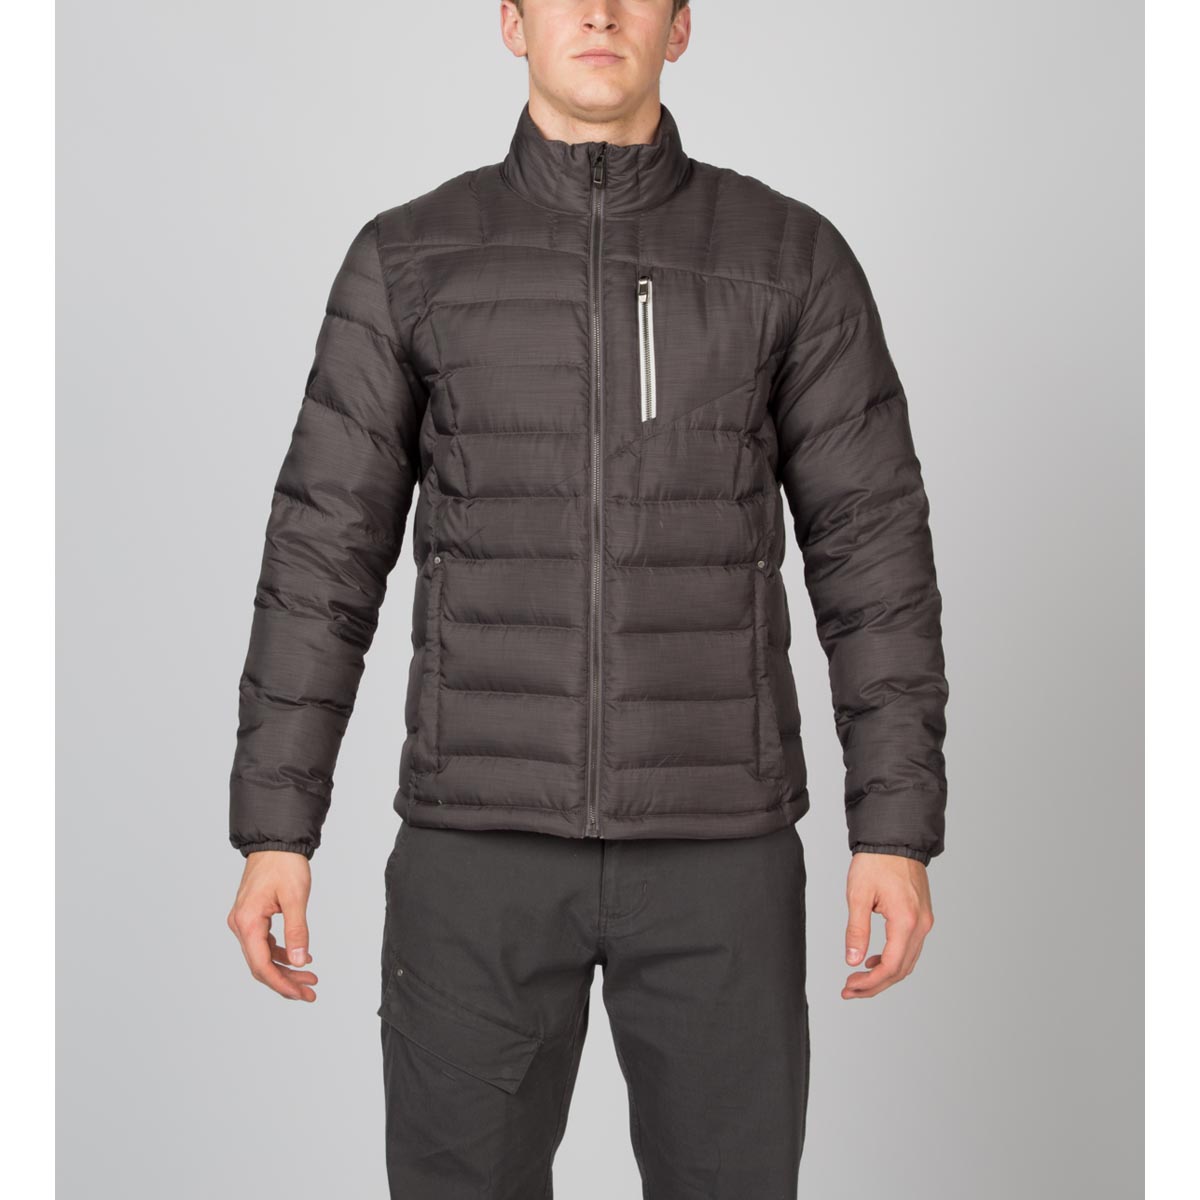 Spyder Men's Dolomite Novelty Full Zip Down Jacket